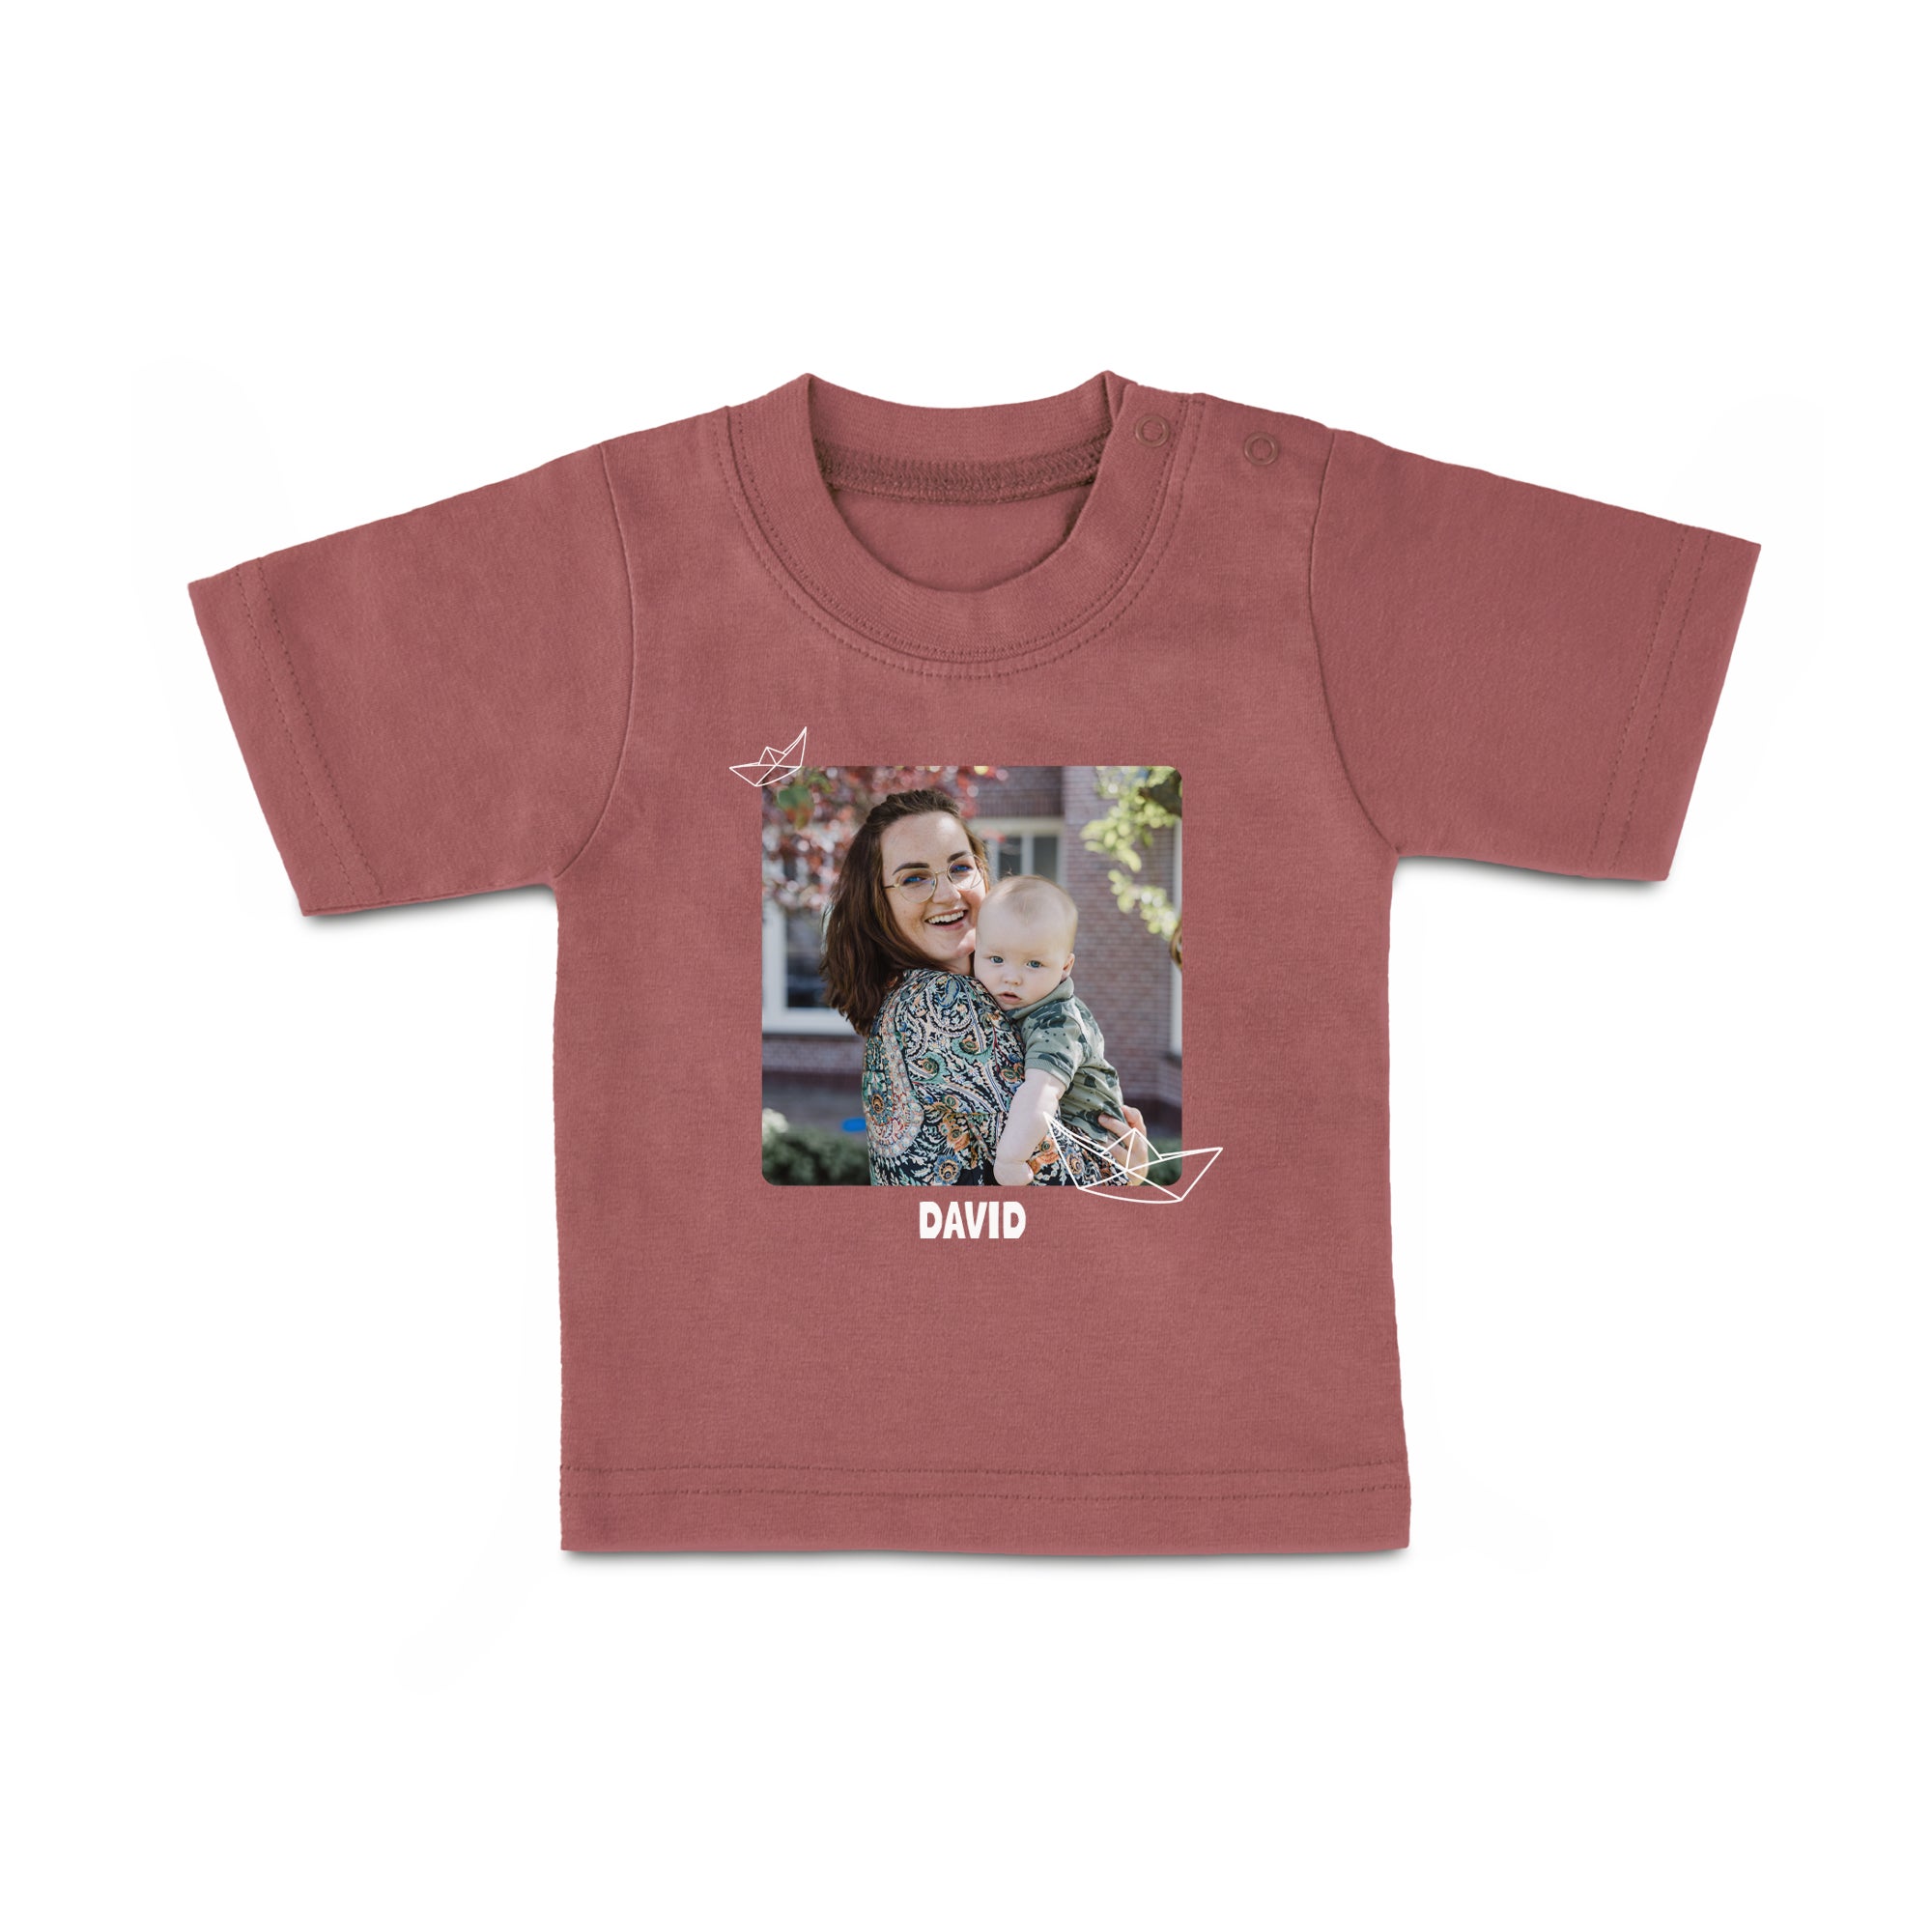 Baby T-Shirt - Printed - Short Sleeves - Pink - 86/92